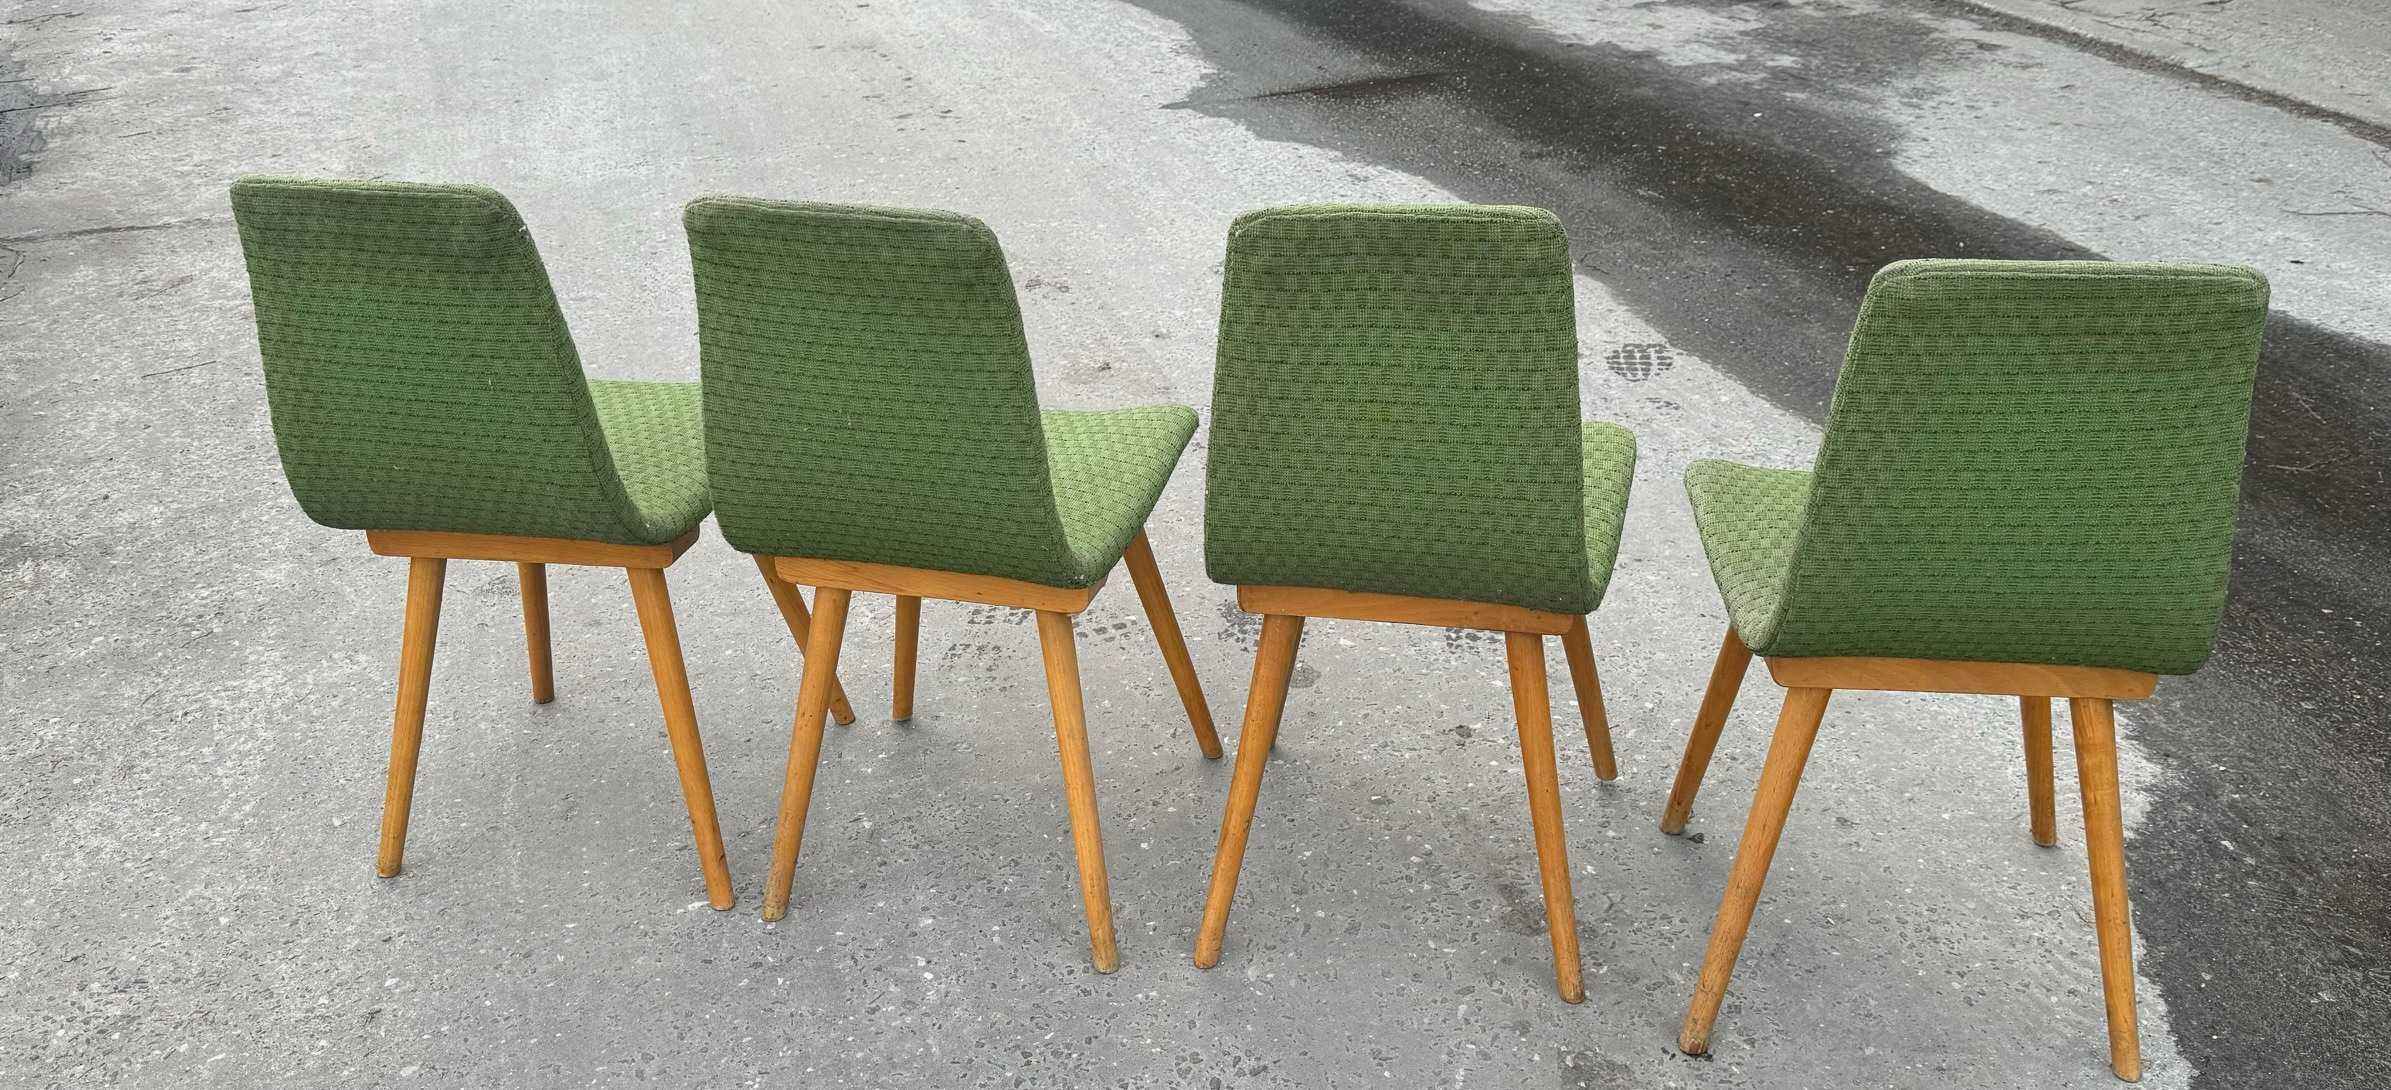 4* krzesła FAMEG RADOMSKO lata 60-te - 70-te Vintage